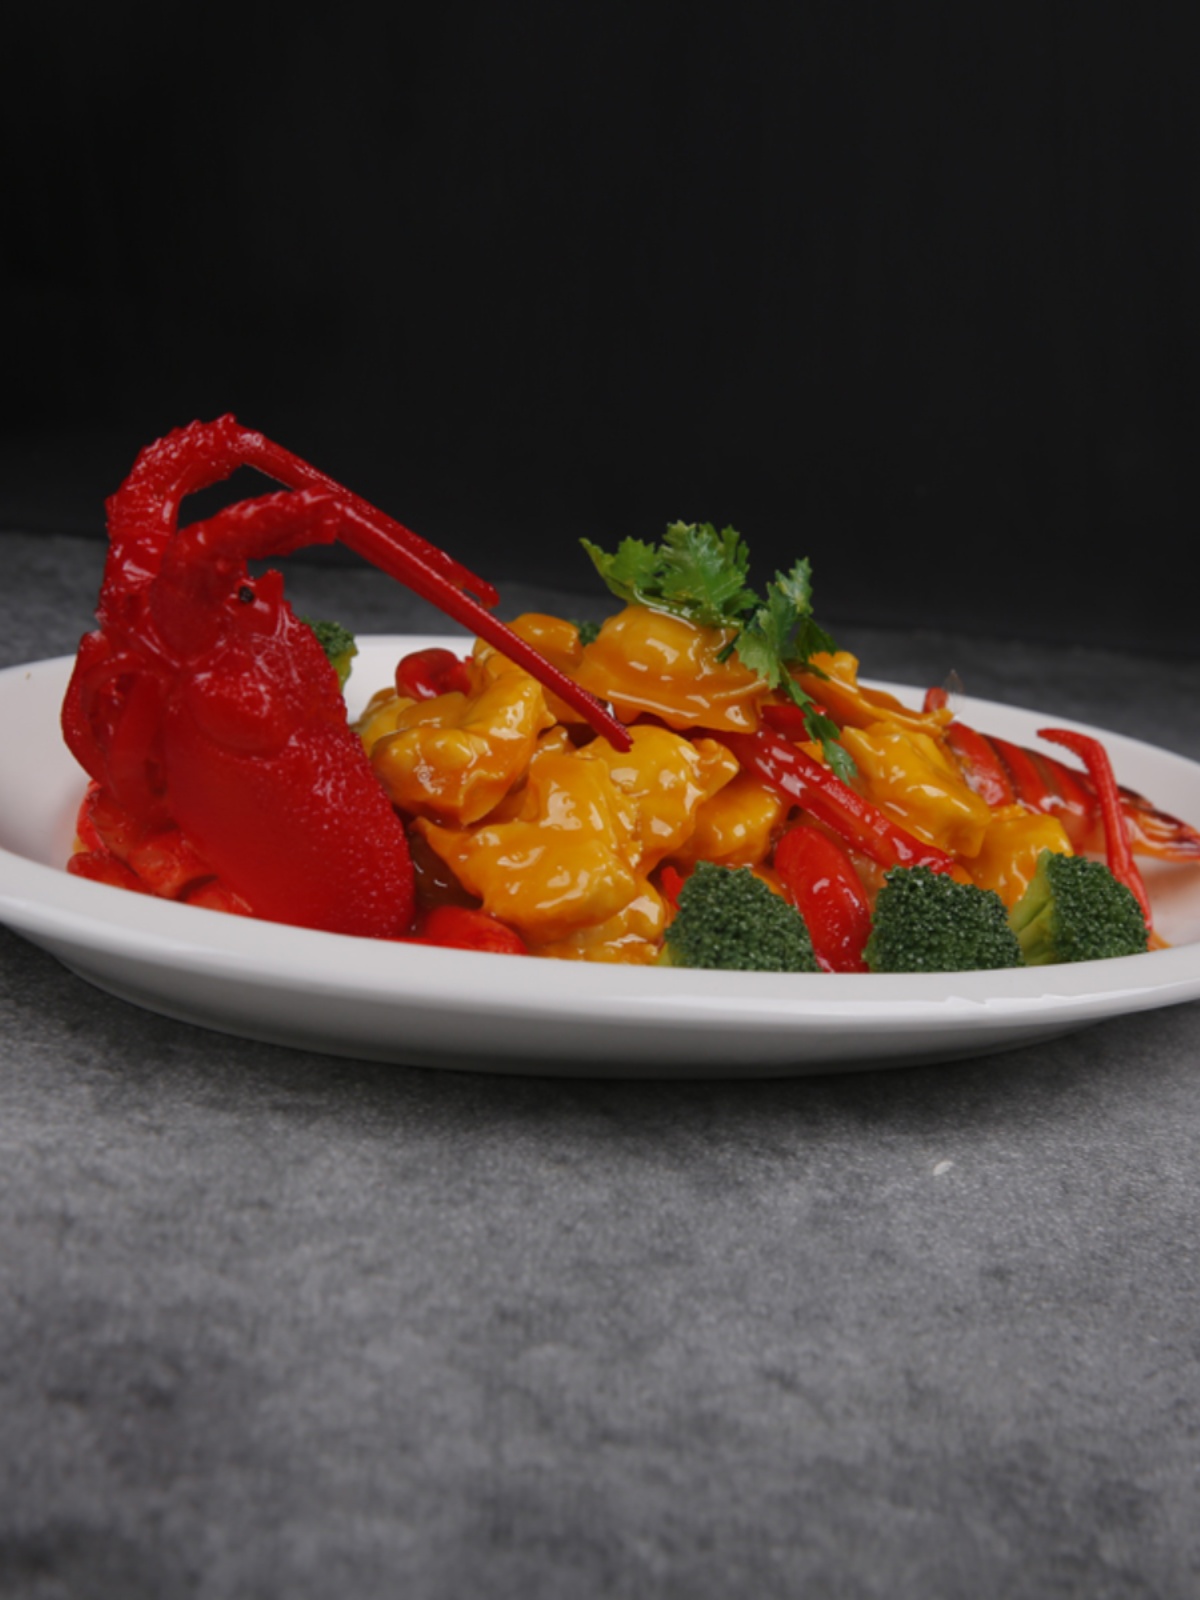 美之灵仿真菜品展示 假菜肴十大粤菜之上汤焗龙虾模型 美食道具